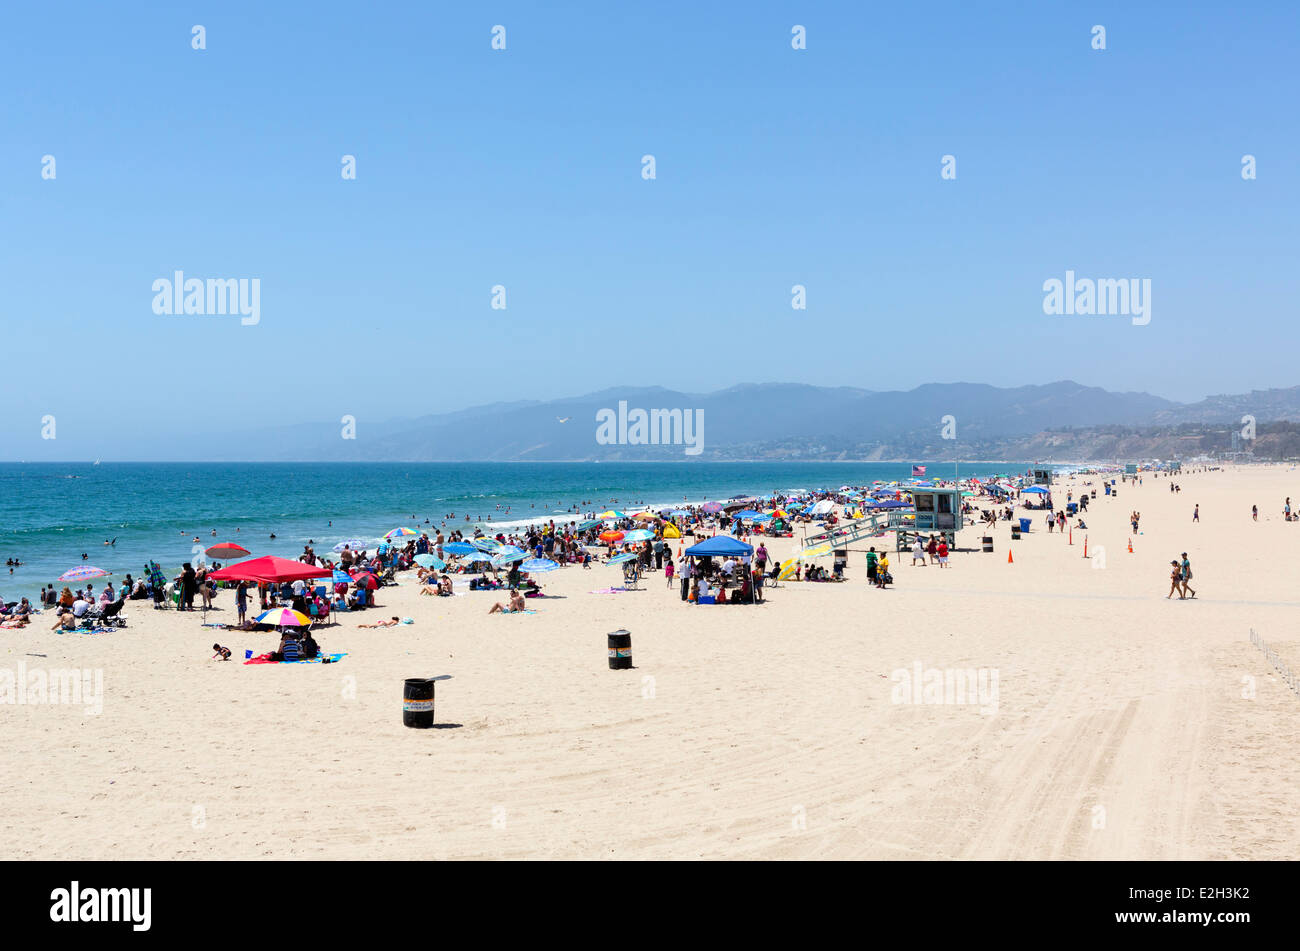 La plage de Santa Monica vue de l'embarcadère, Los Angeles, Californie, USA Banque D'Images